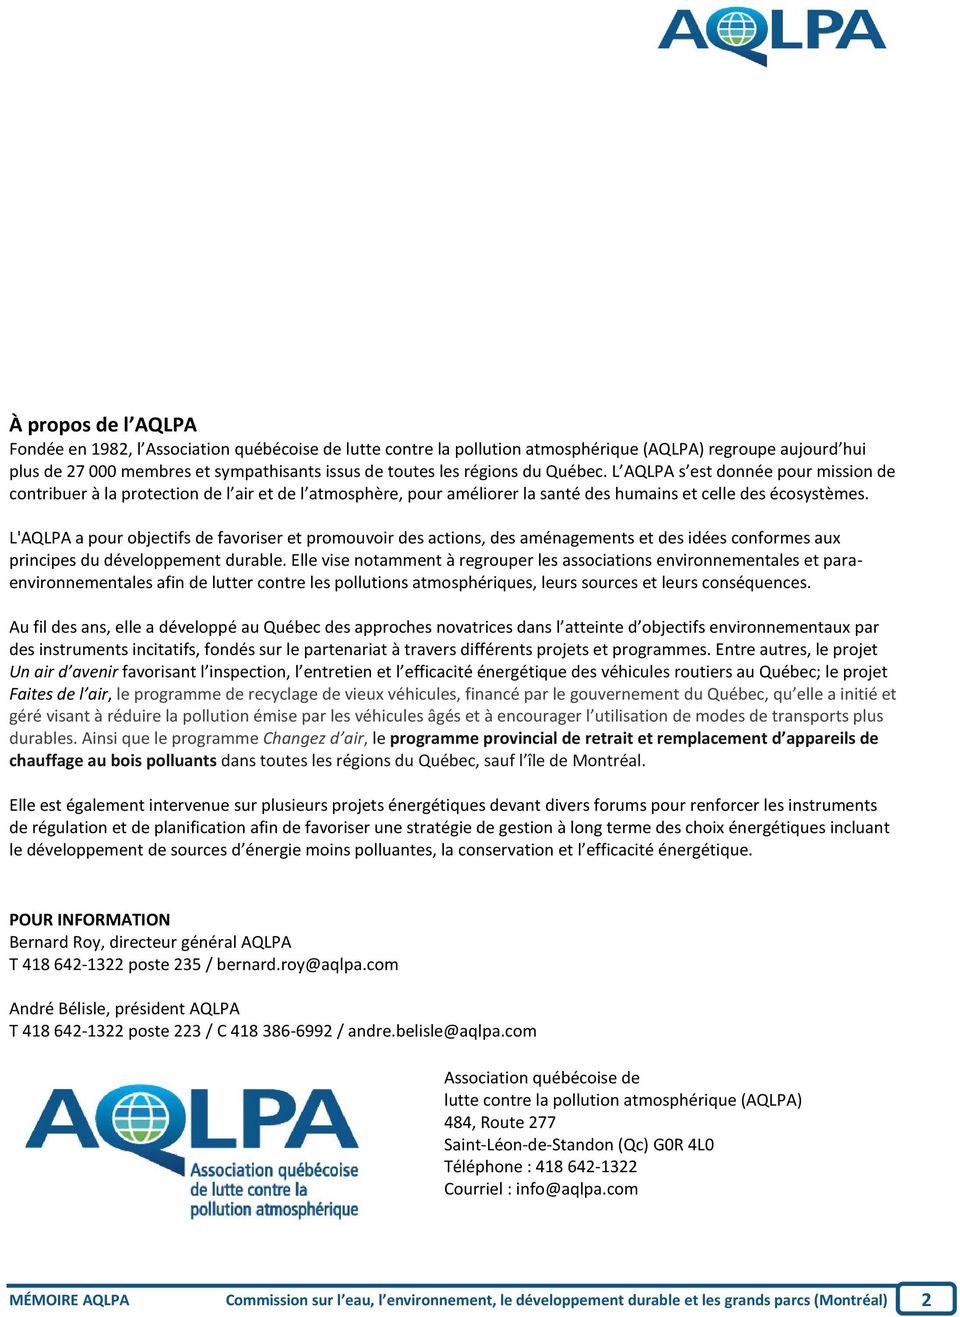 L'AQLPA a pour objectifs de favoriser et promouvoir des actions, des aménagements et des idées conformes aux principes du développement durable.